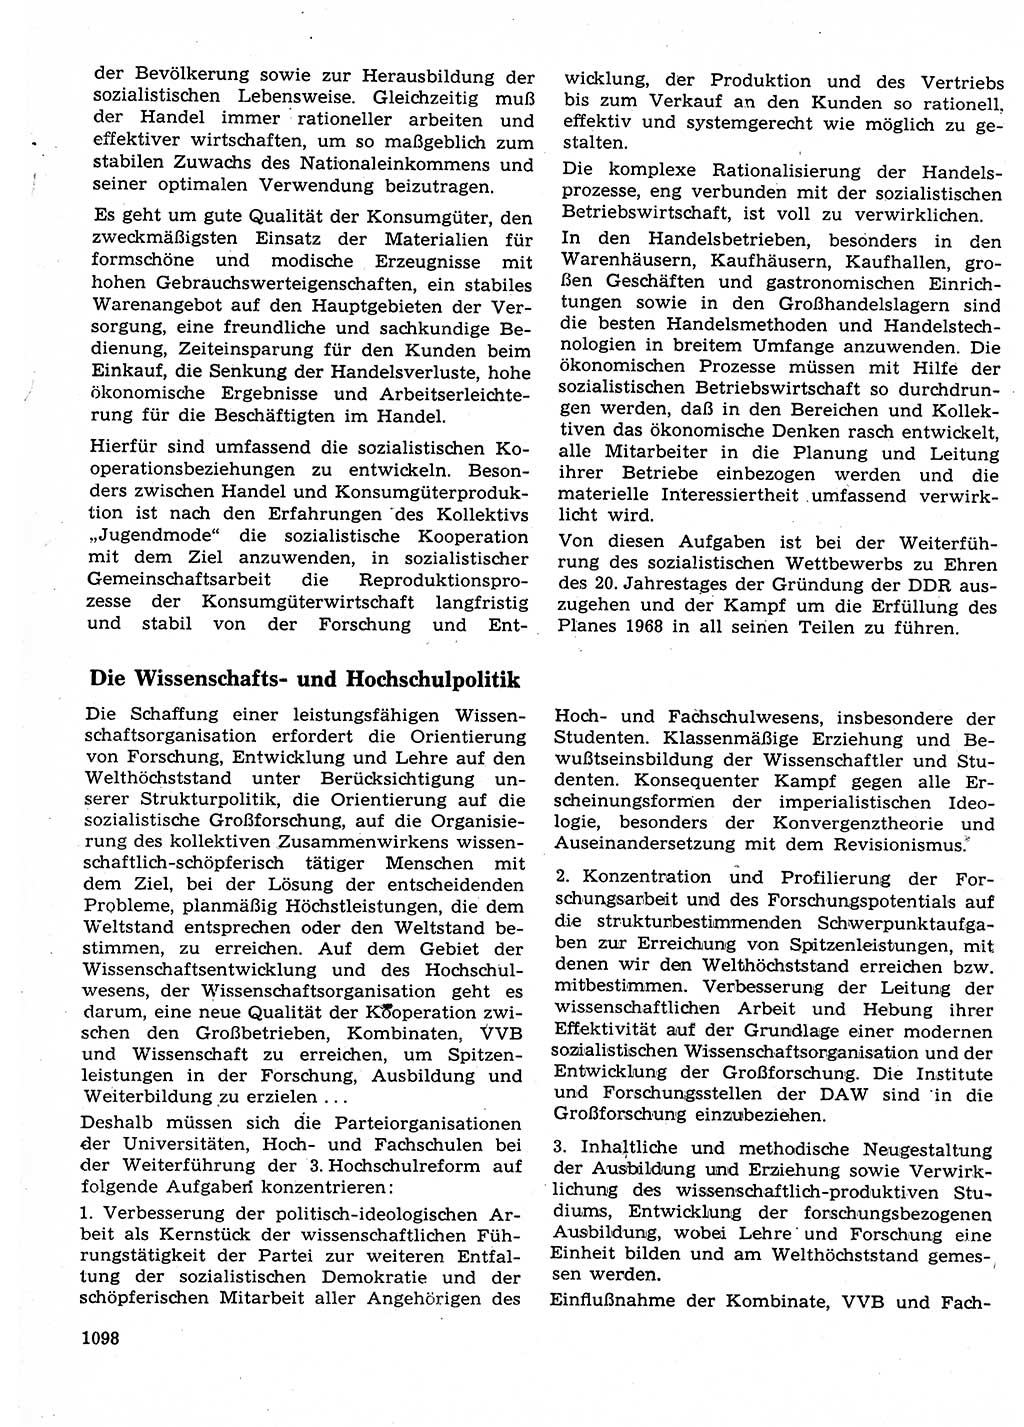 Neuer Weg (NW), Organ des Zentralkomitees (ZK) der SED (Sozialistische Einheitspartei Deutschlands) für Fragen des Parteilebens, 23. Jahrgang [Deutsche Demokratische Republik (DDR)] 1968, Seite 1082 (NW ZK SED DDR 1968, S. 1082)